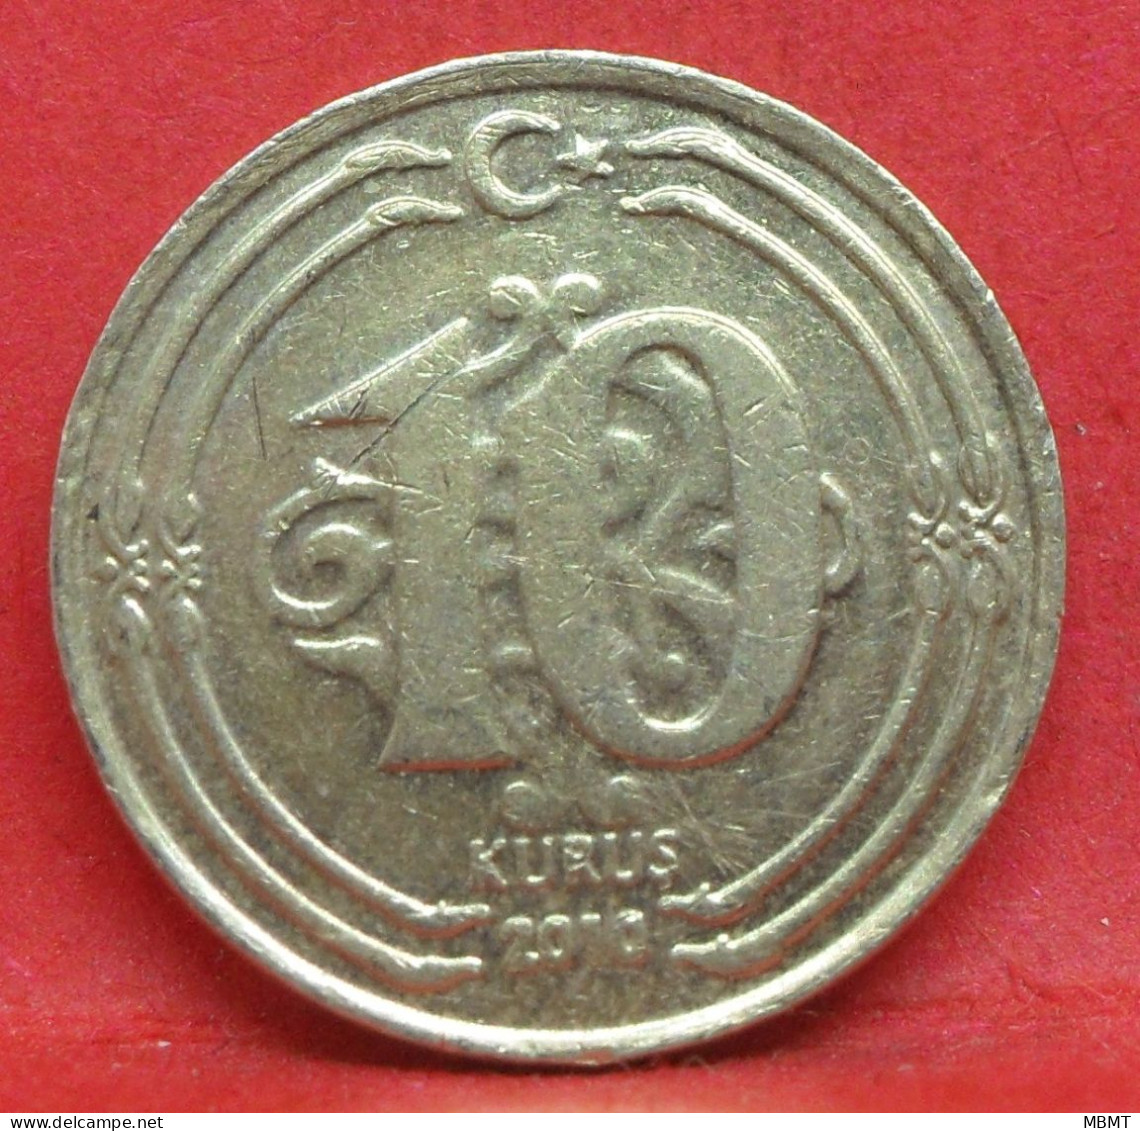 10 Kurus 2010 - TTB - Pièce De Monnaie Turquie - Article N°4991 - Turquie